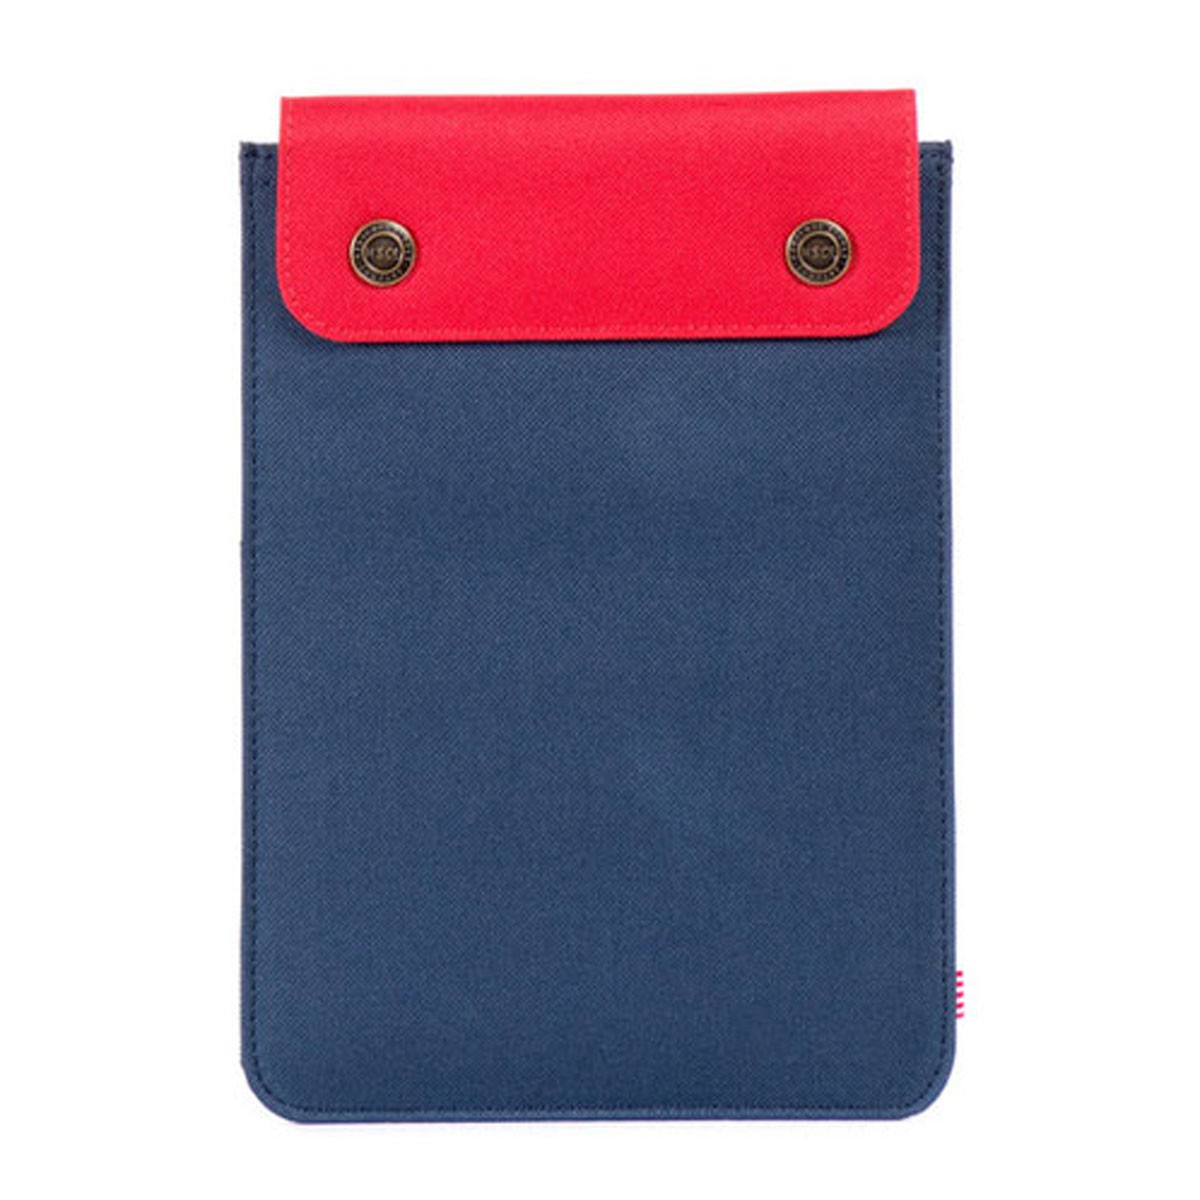 ハーシェル Herschel iPad Mini ケース Spokane Sleeve for iPad Mini Sleeves 10191-00018-OS Navy/Red